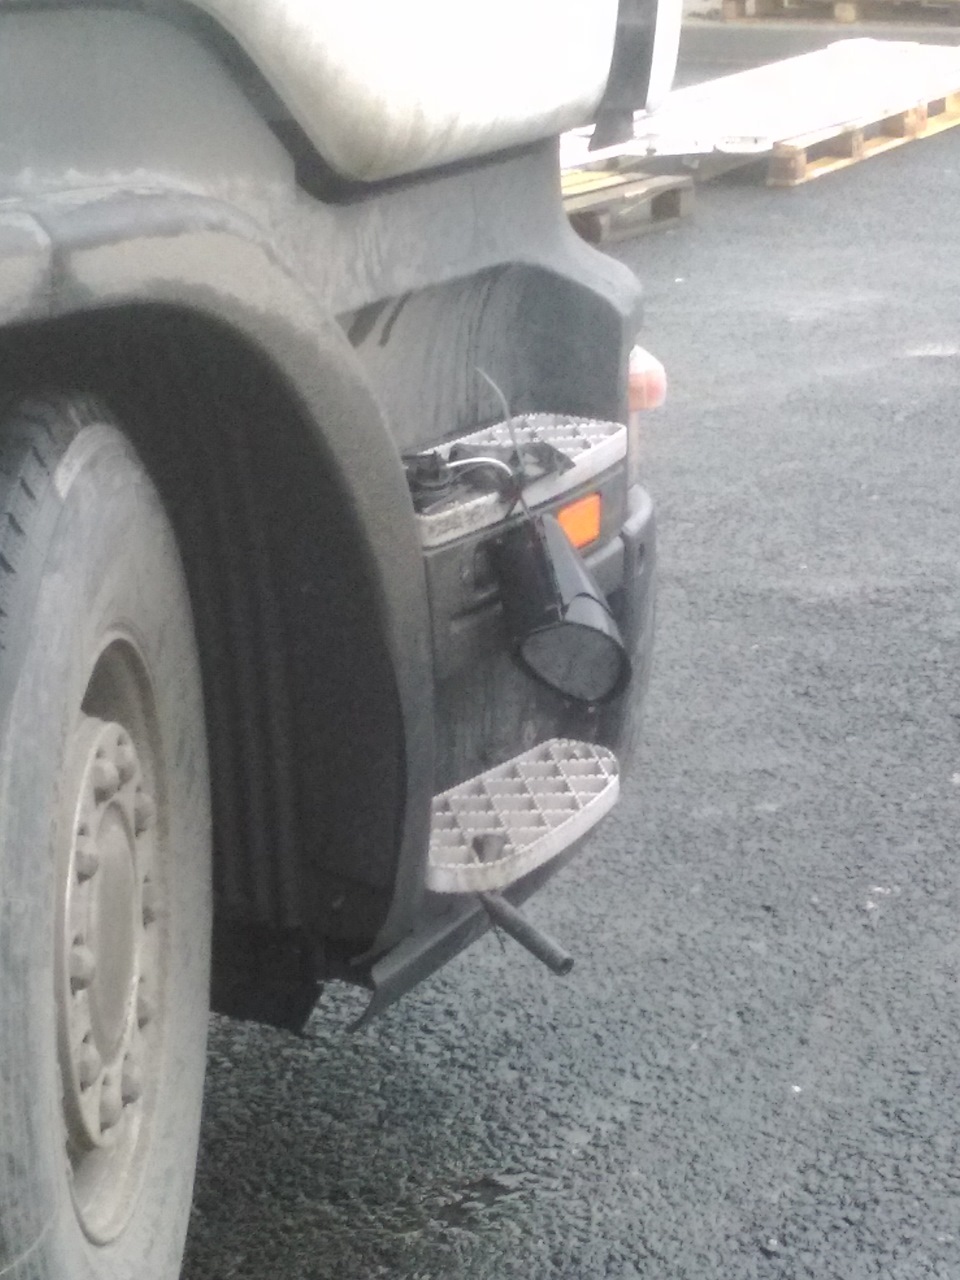 Туфли на подножке грузовика